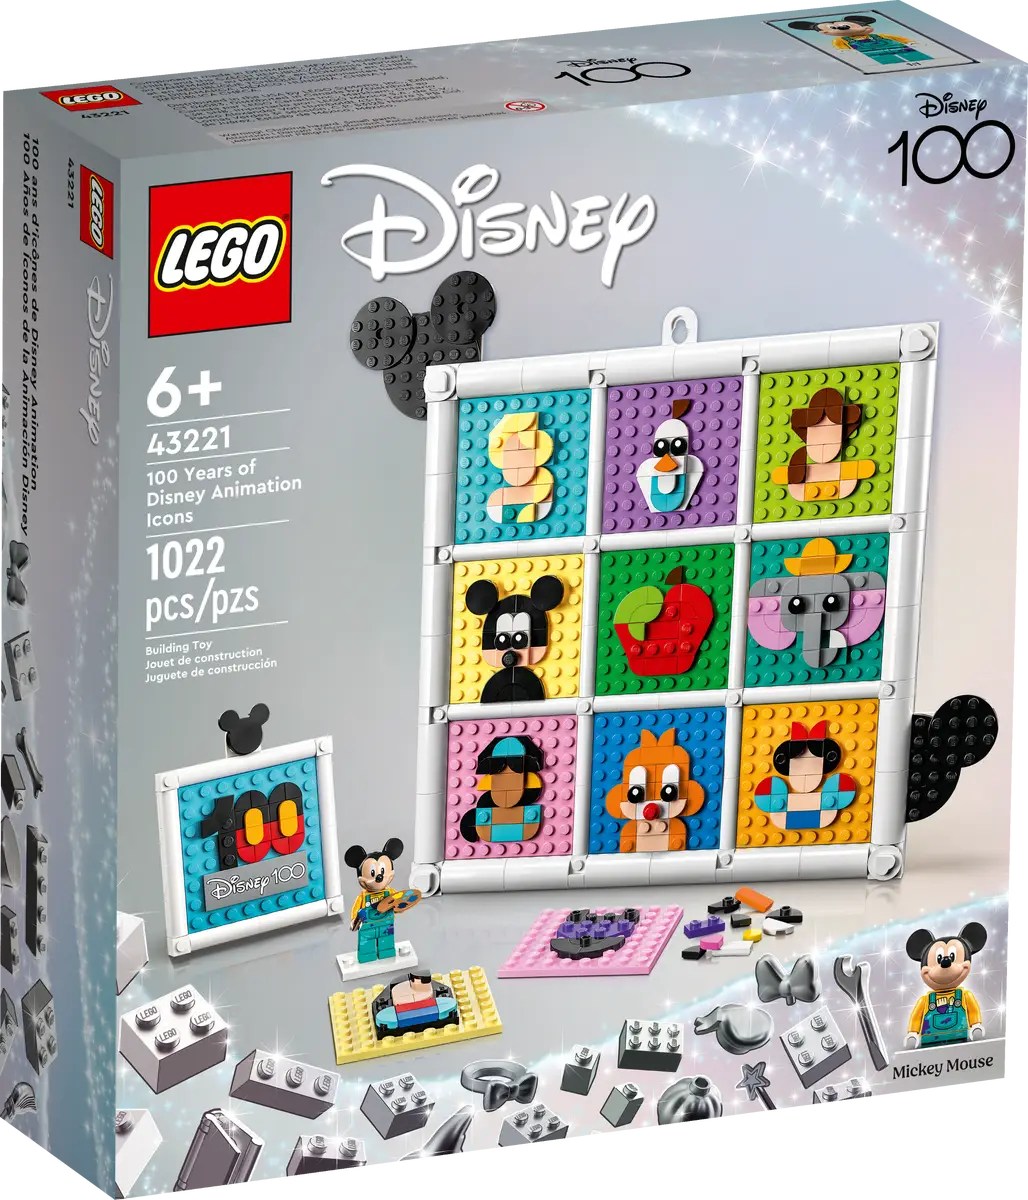 Lego Disney 100 Years of Disney Animation Icons